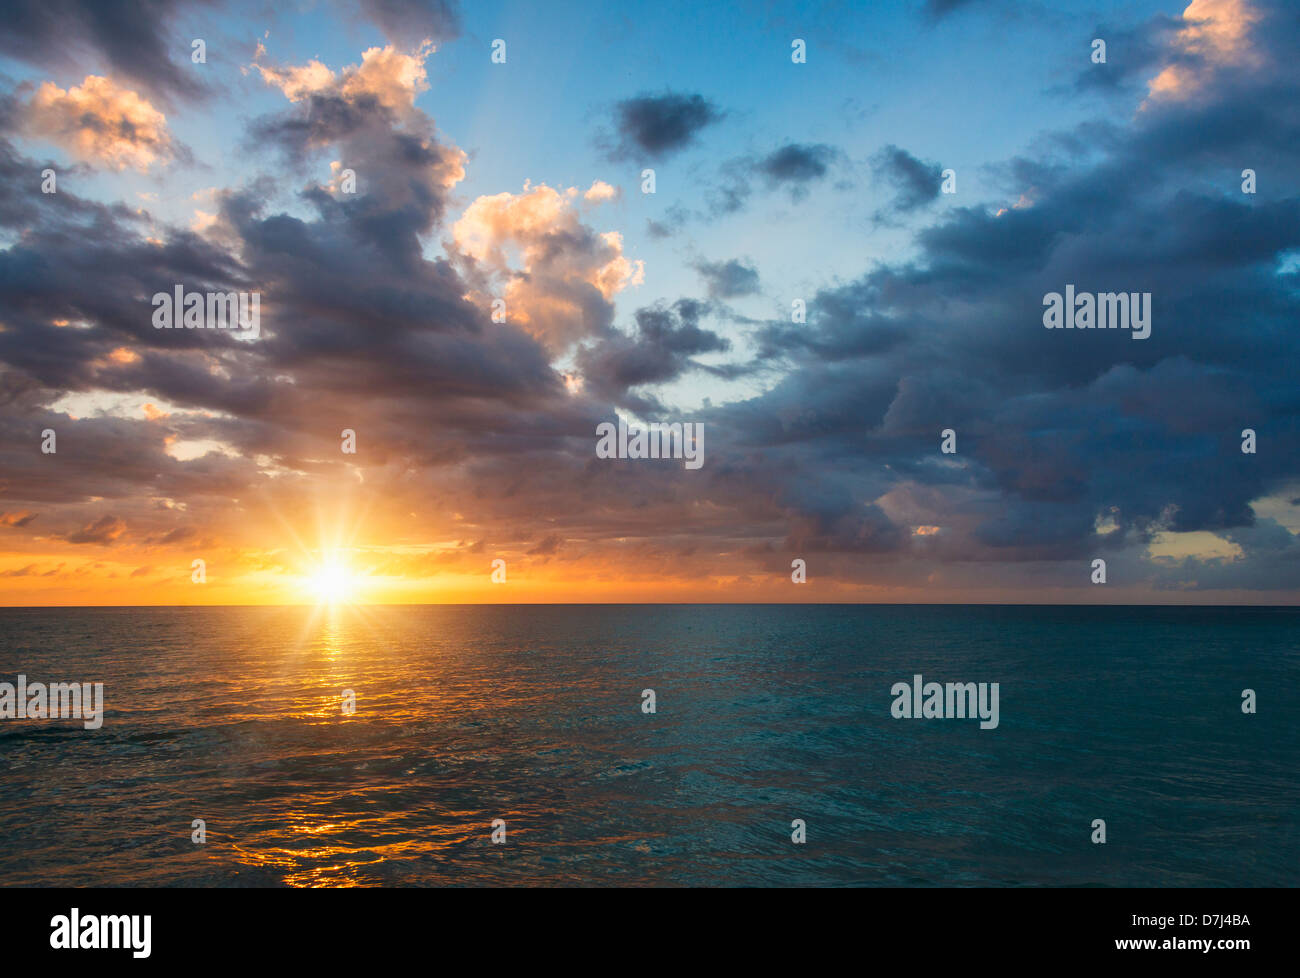 Jamaica, Sun setting over sea Stock Photo